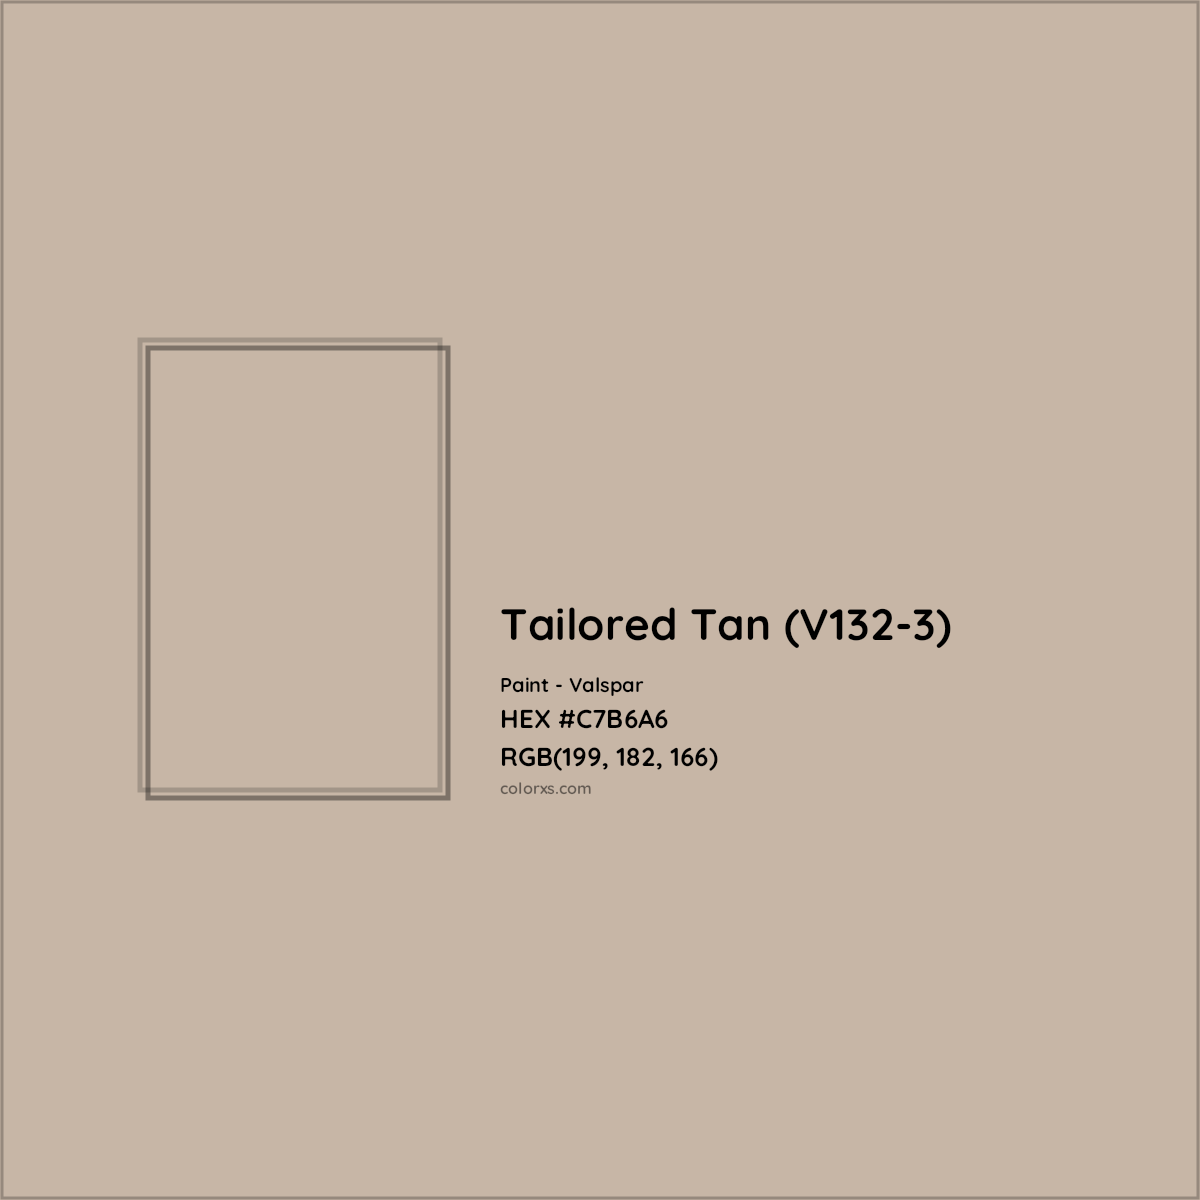 HEX #C7B6A6 Tailored Tan (V132-3) Paint Valspar - Color Code